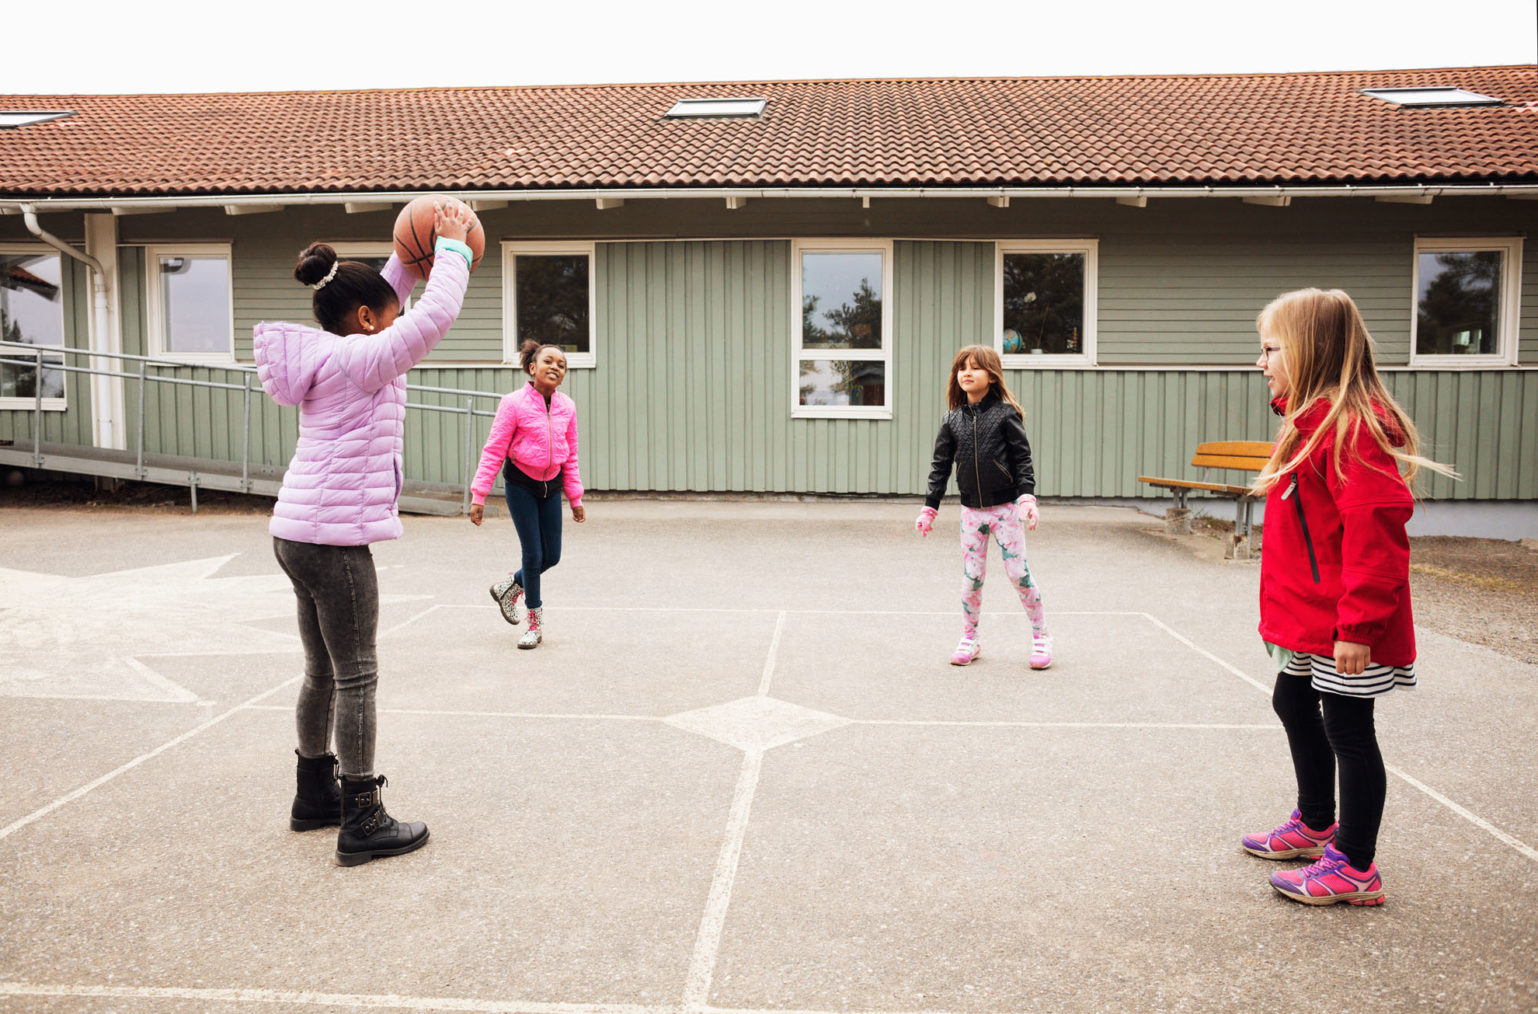 Bilde av barn som kaster ball i skolegård. Skolebygningen i bakgrunnen har rampe.